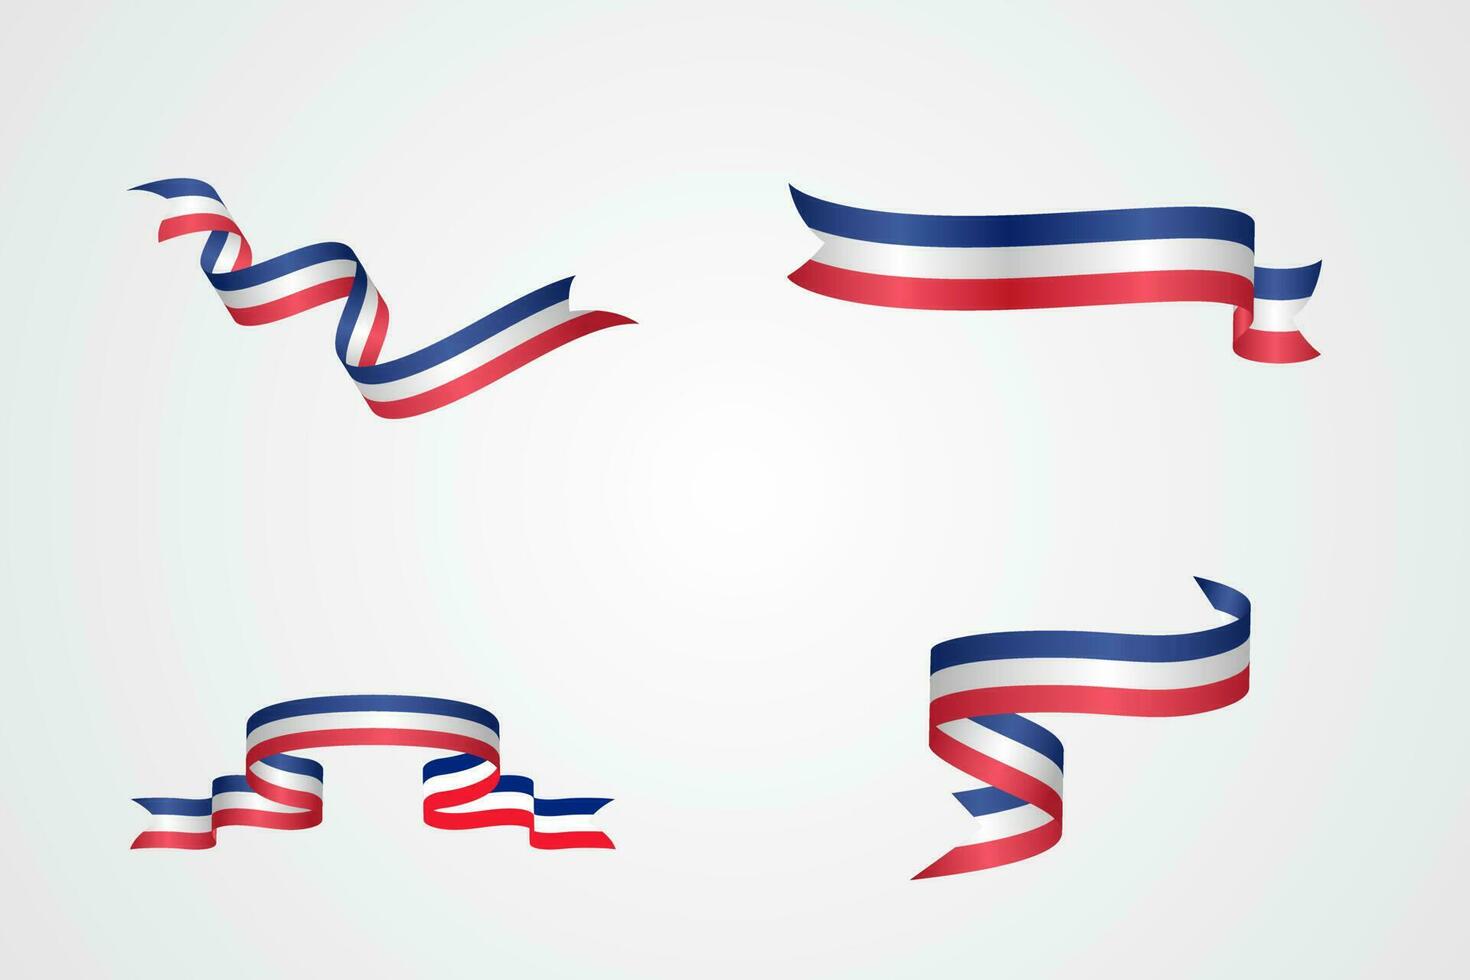 reeks van vlag lint met palet kleuren van Frankrijk voor onafhankelijkheid dag viering decoratie vector